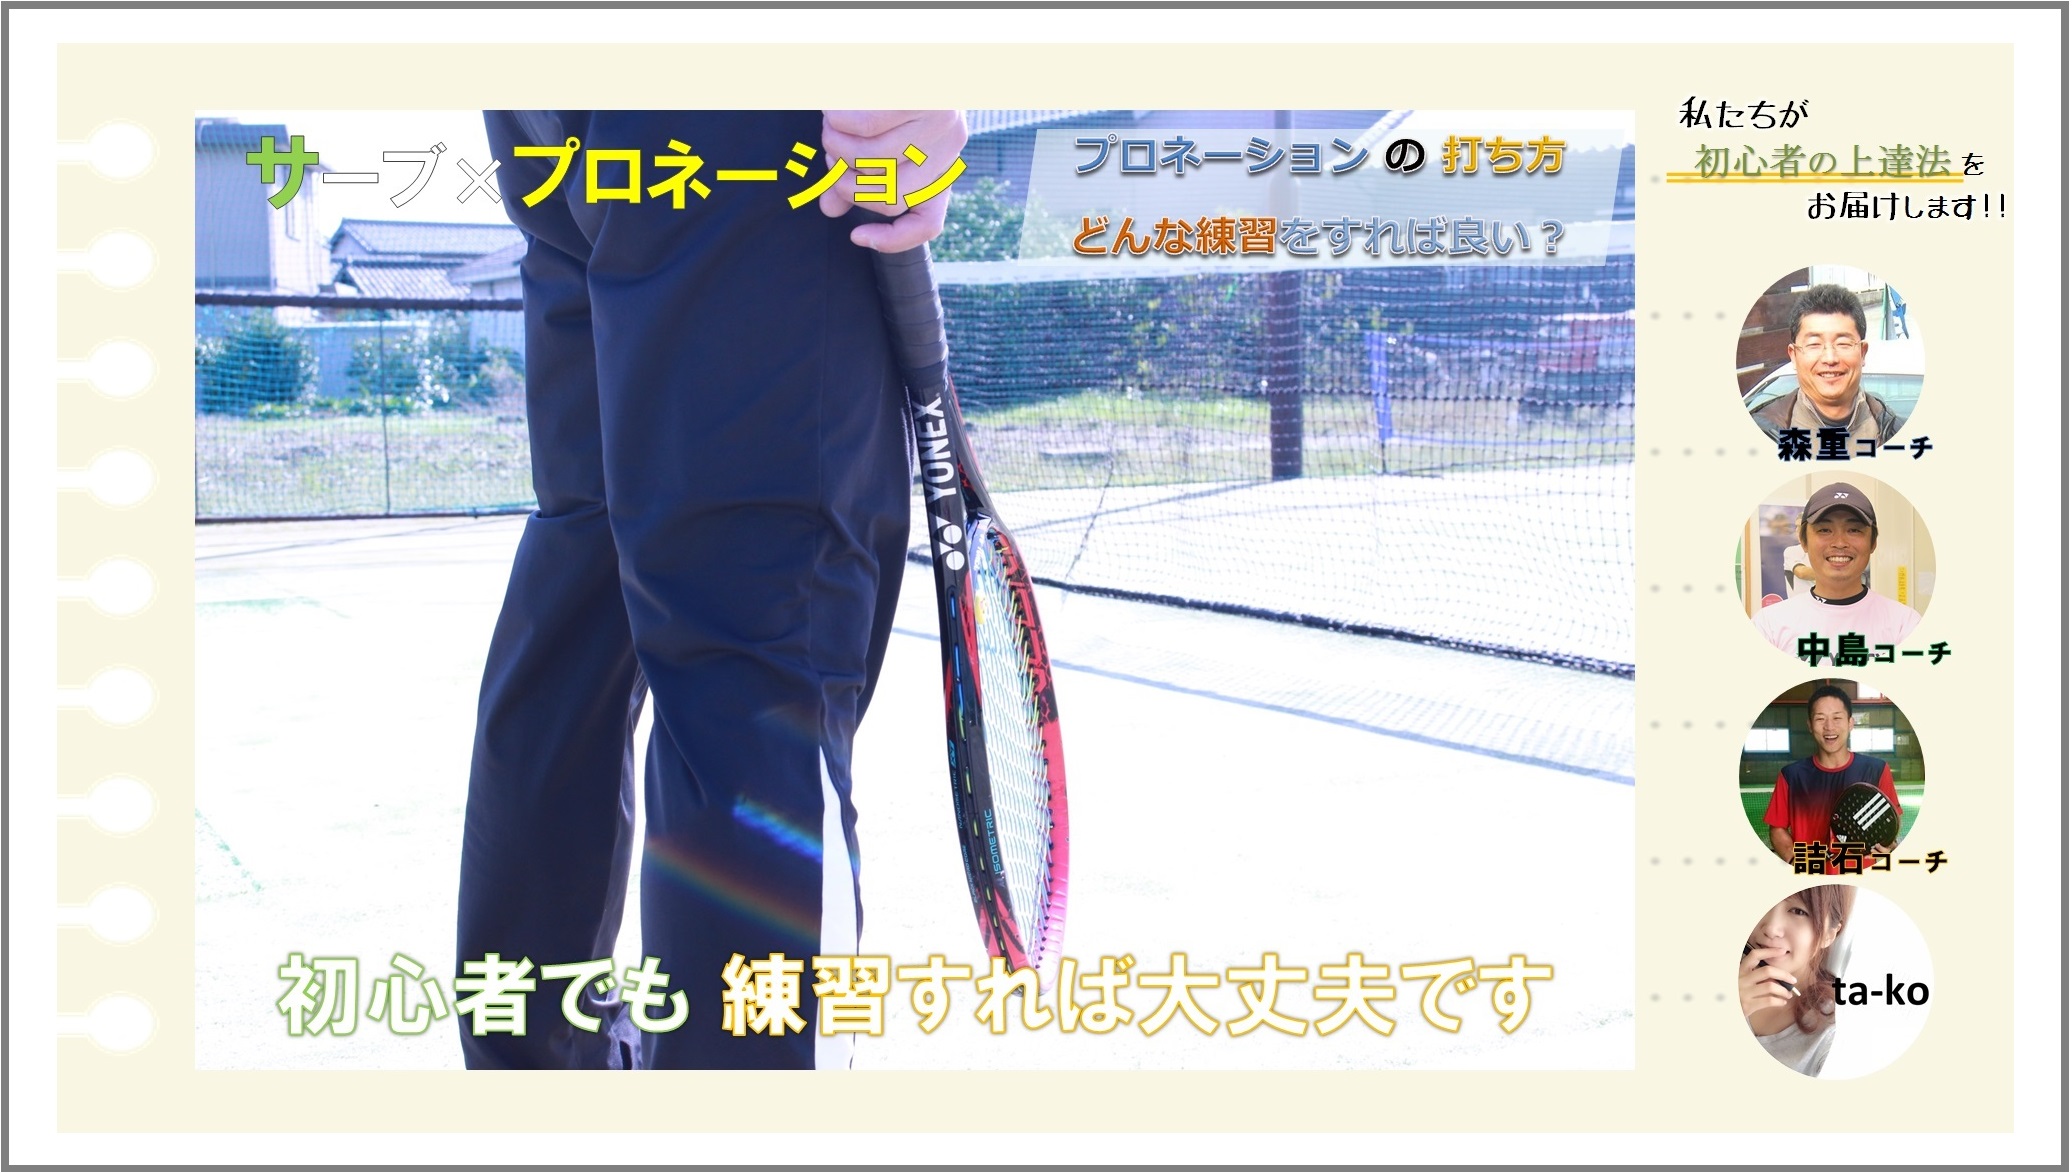 テニス初心者の上達コツ動画